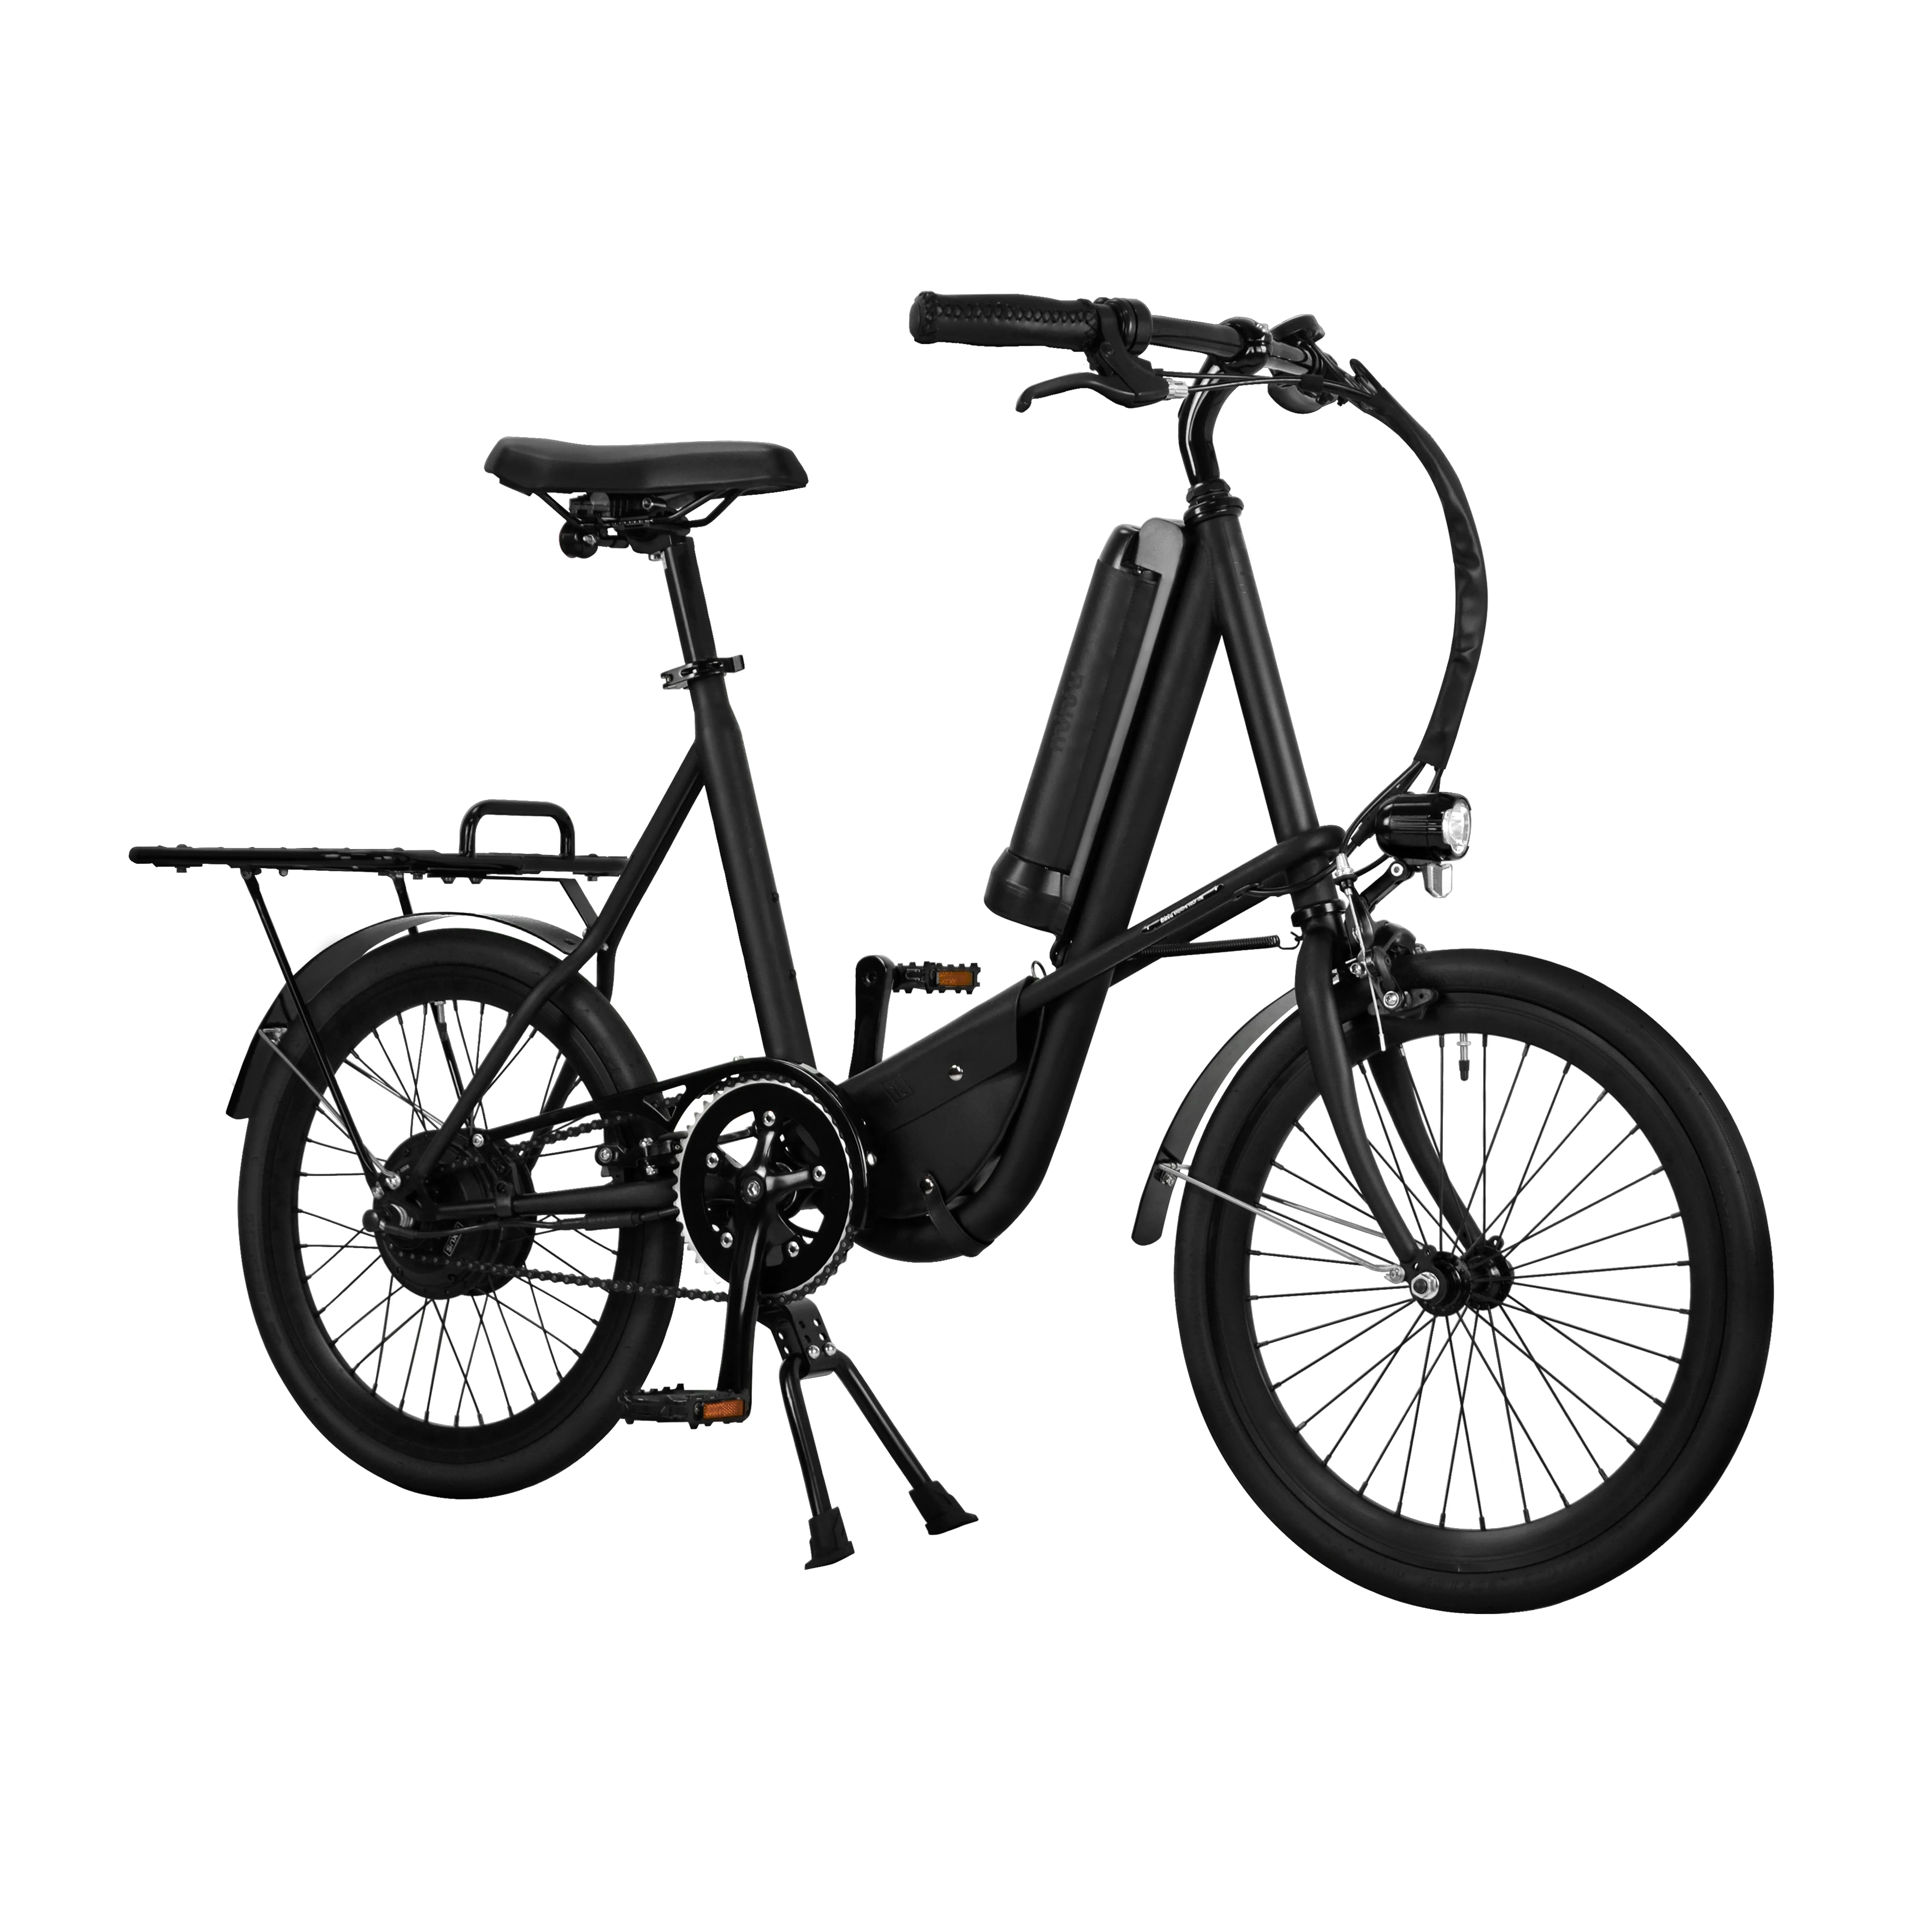 Мини велотренажер для транспортировки SEic miniu ограниченный матовый черный велосипед, ищите дистрибьютора дилера